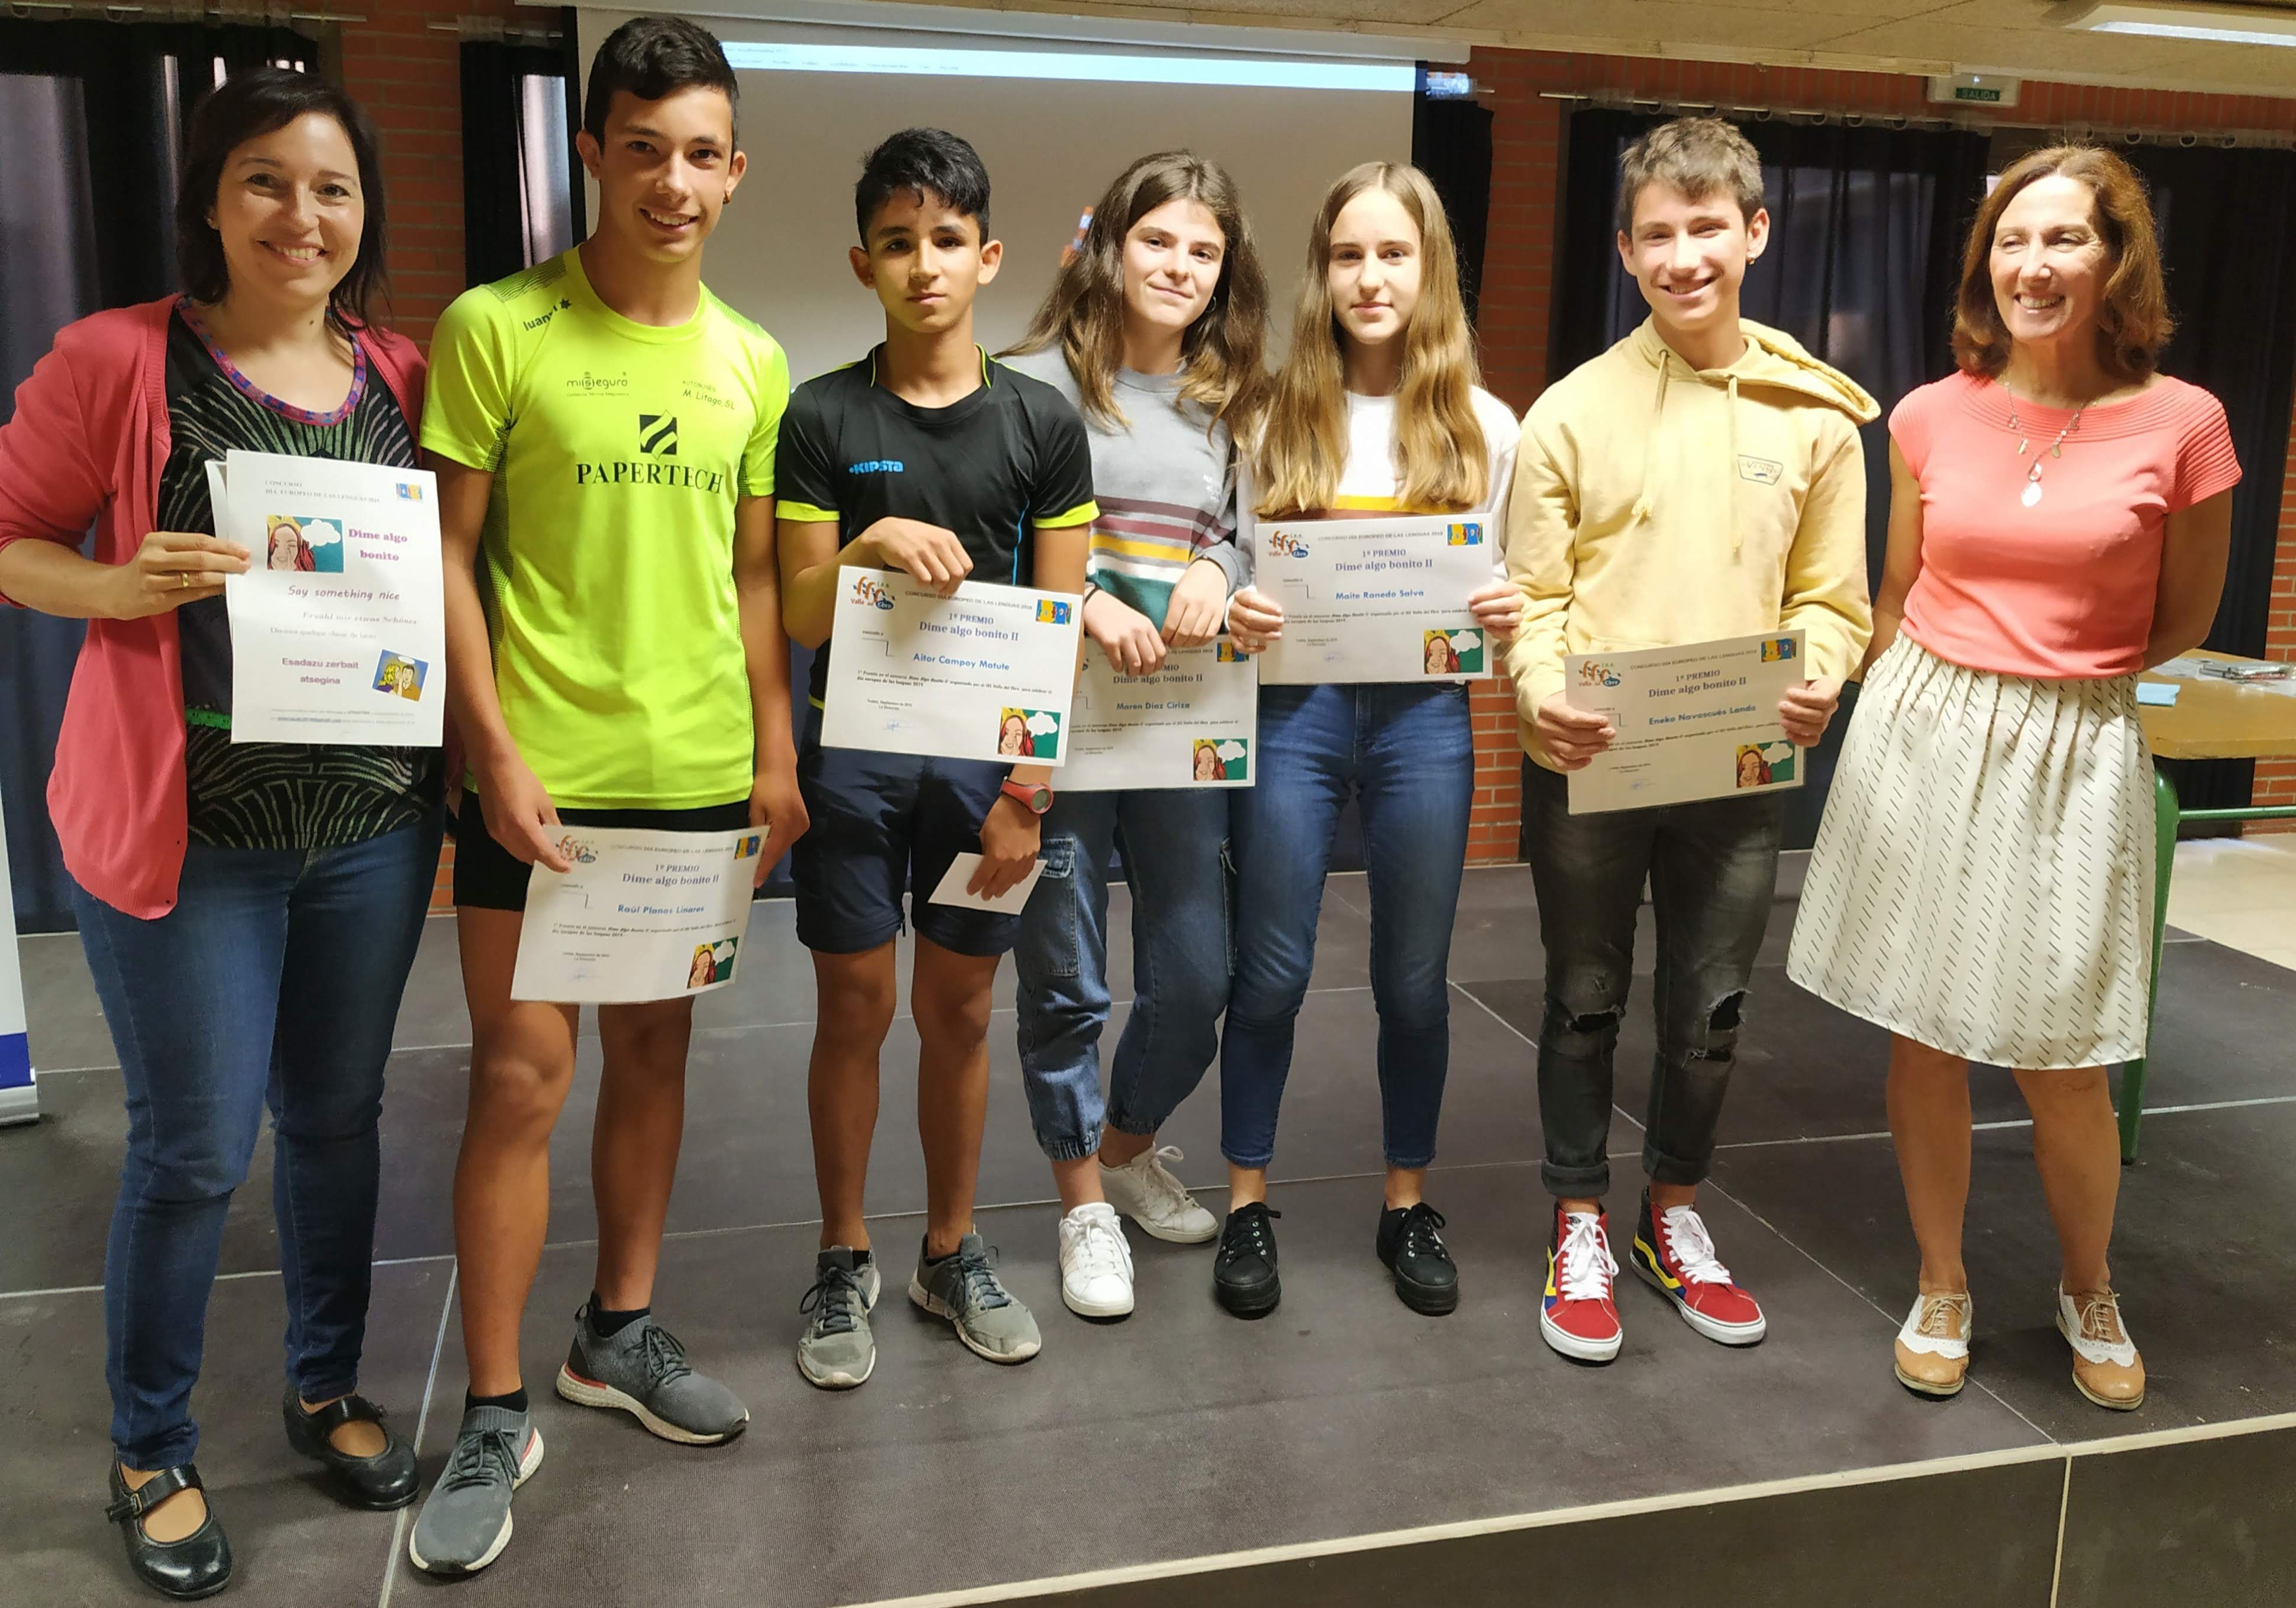 El IES Valle del Ebro organizó varias modalidades de trabajos en las lenguas que se trabajan en el centro. En la imagen, los estudiantes ganadores de la modalidad de video, con un trabajo en euskera.